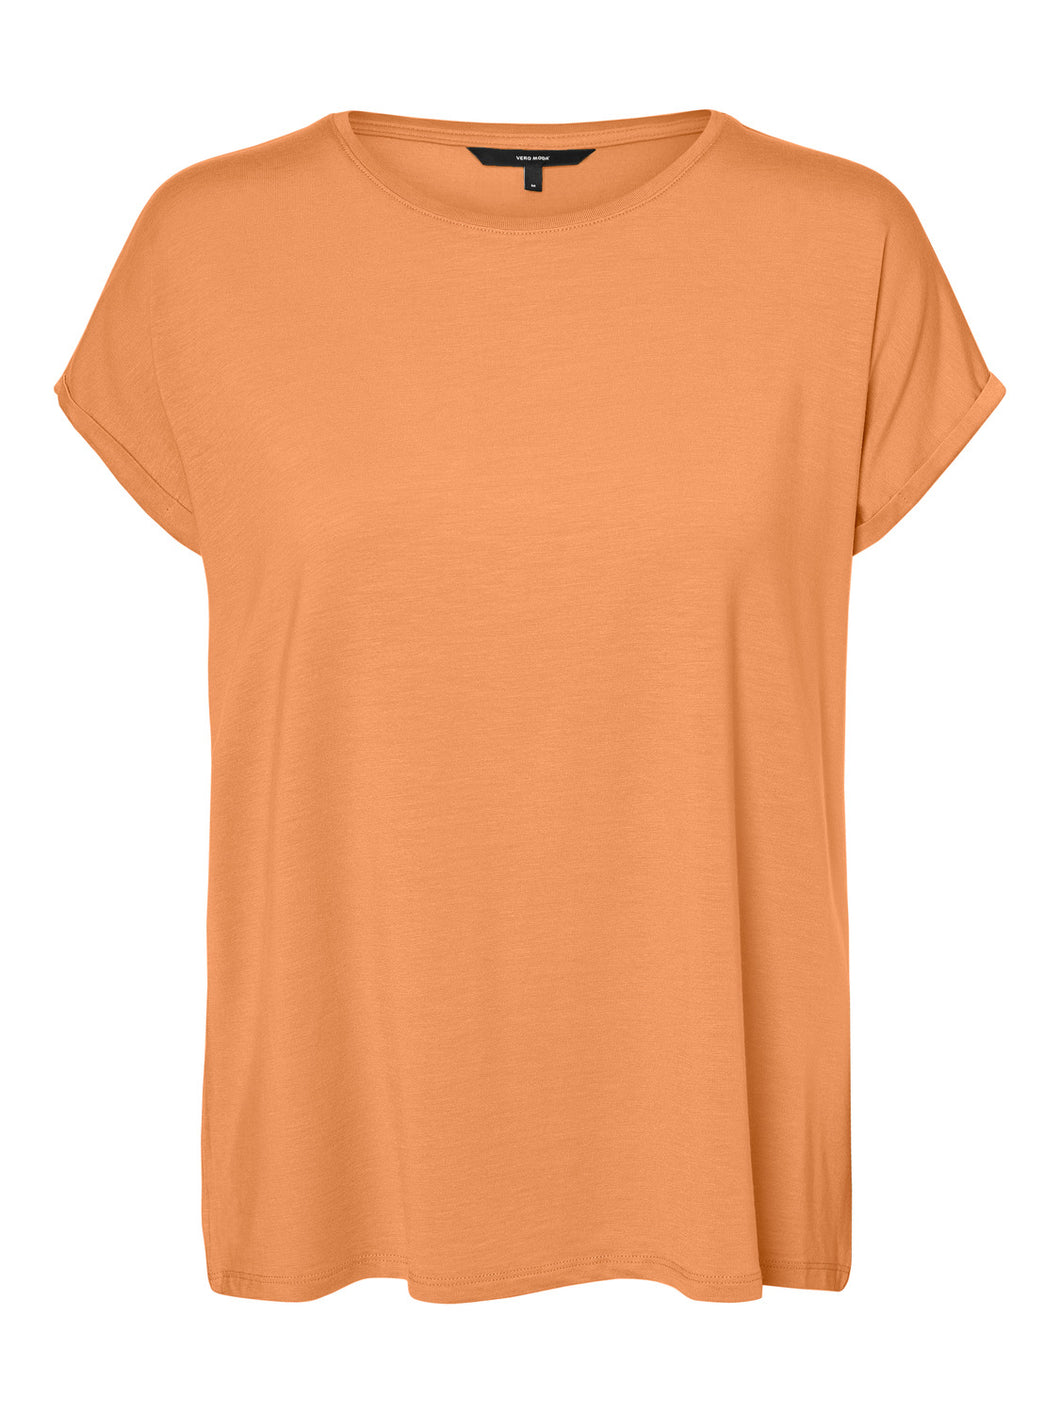 VMAVA T-Shirt - Mock Orange